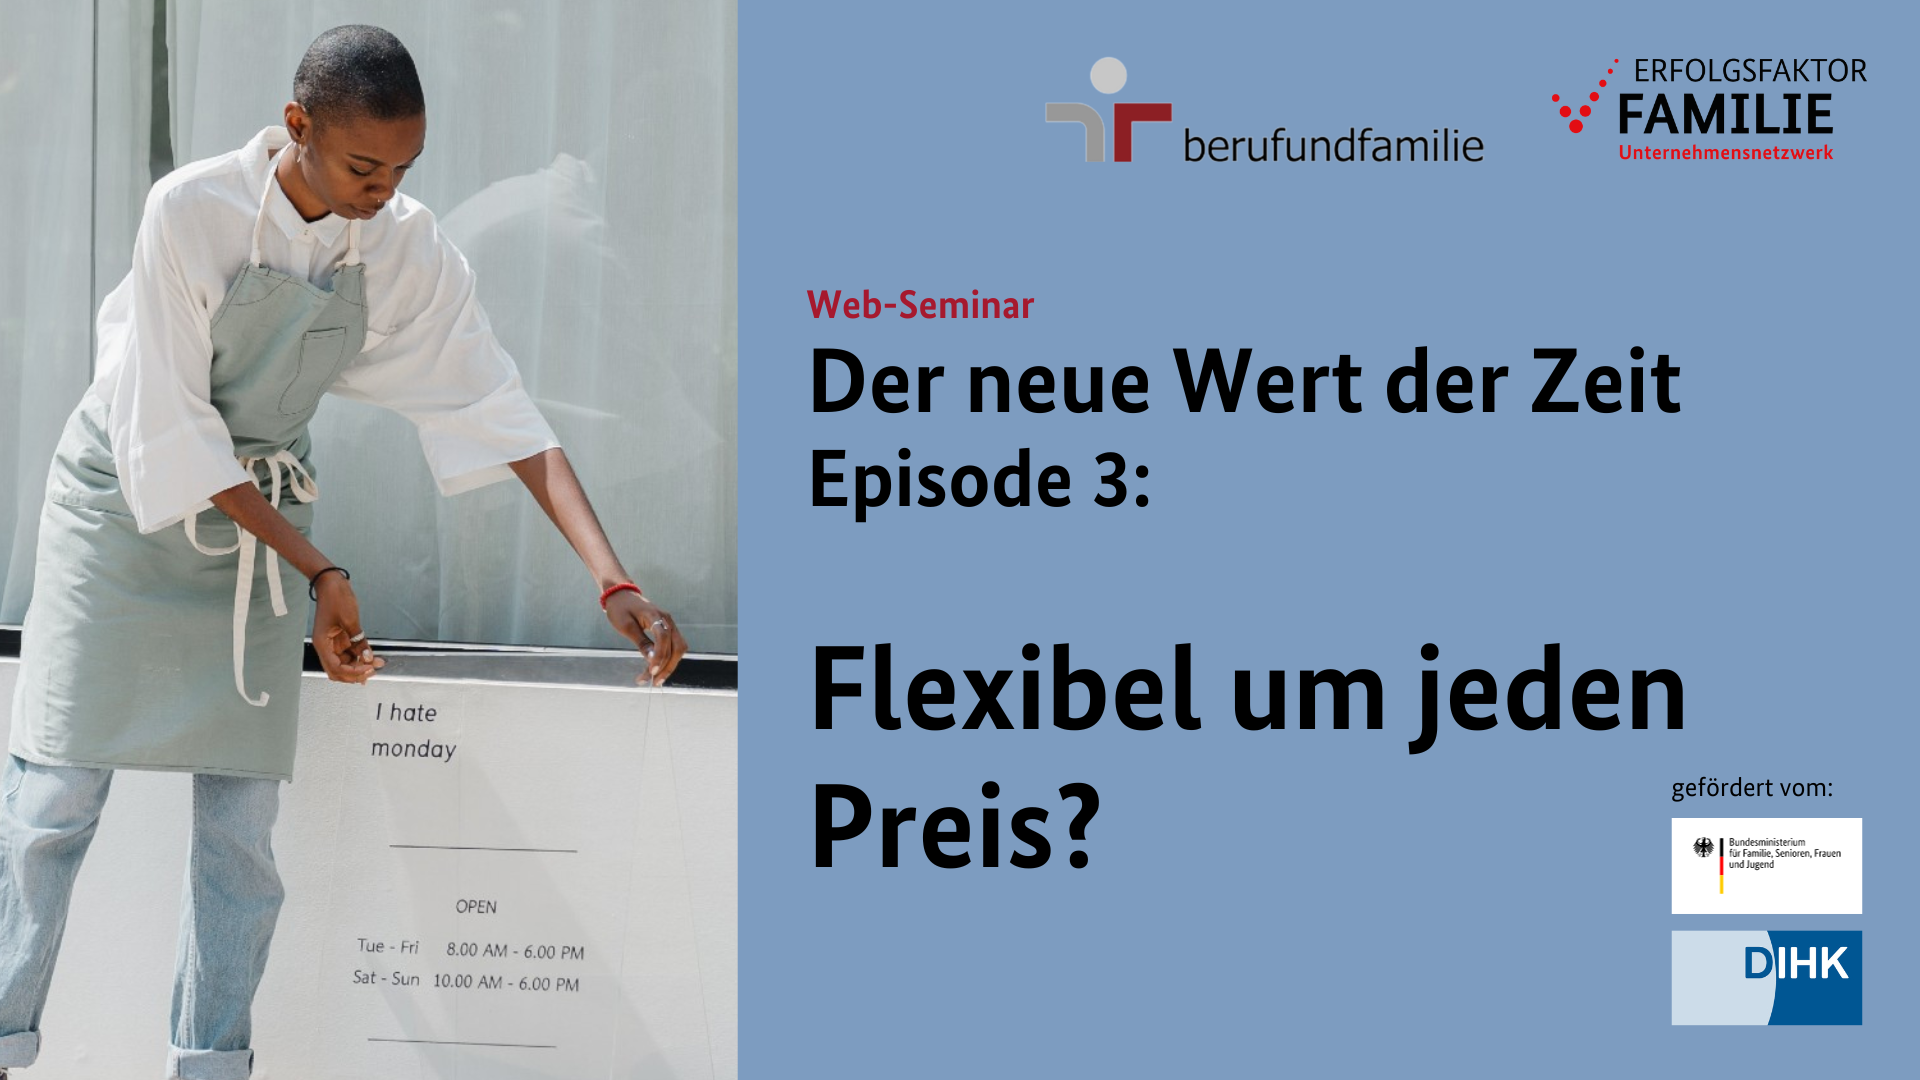 Bild: Der neue Wert der Zeit (Episode 3): Flexibel um jeden Preis?